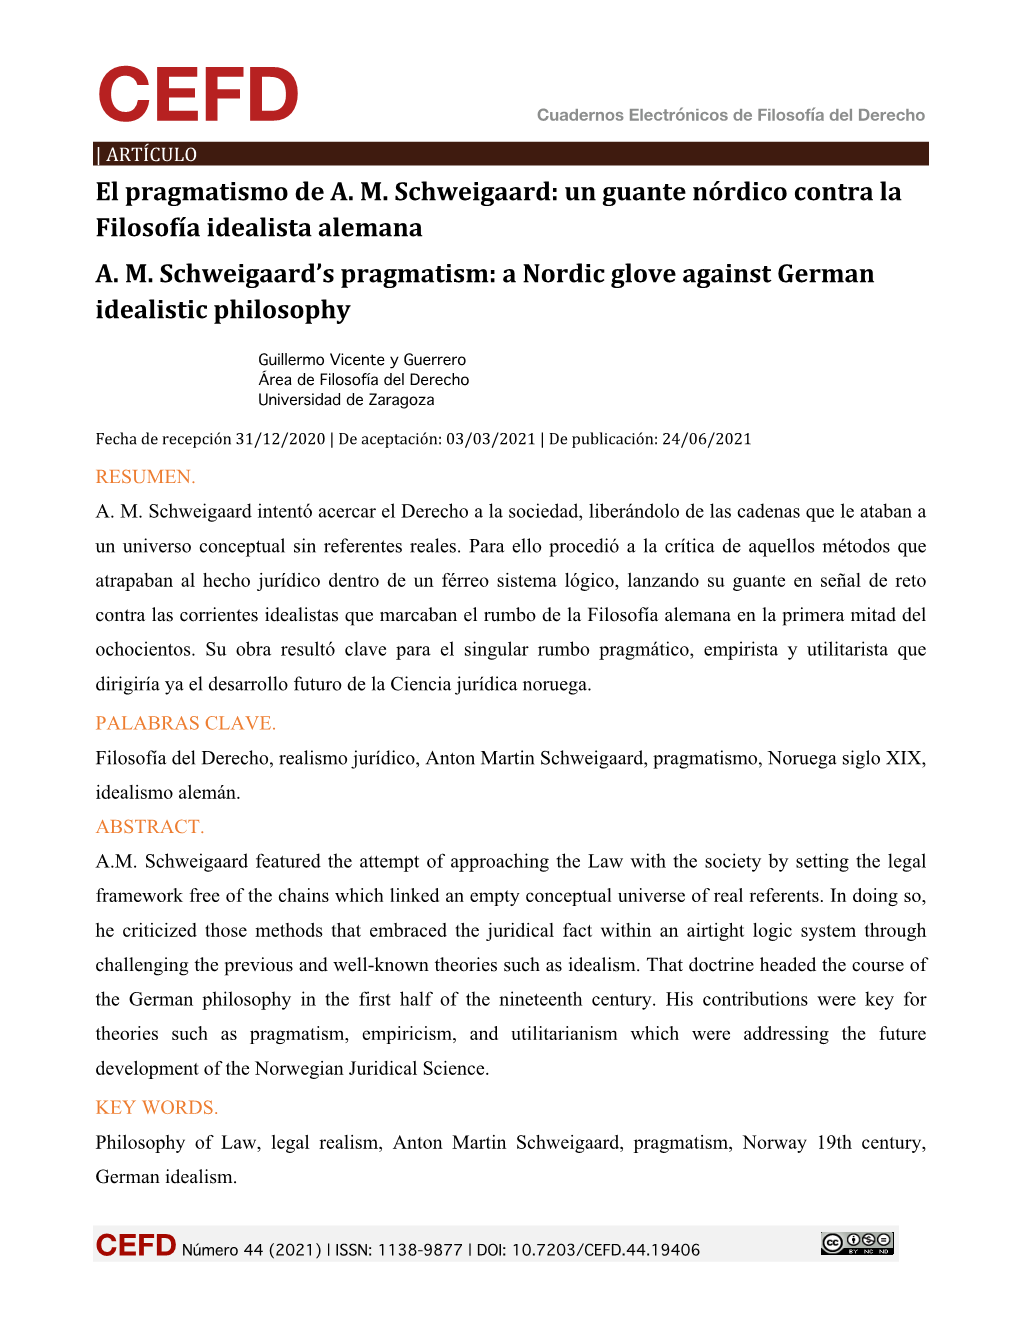 El Pragmatismo De A. M. Schweigaard: Un Guante Nórdico Contra La Filosofía Idealista Alemana A